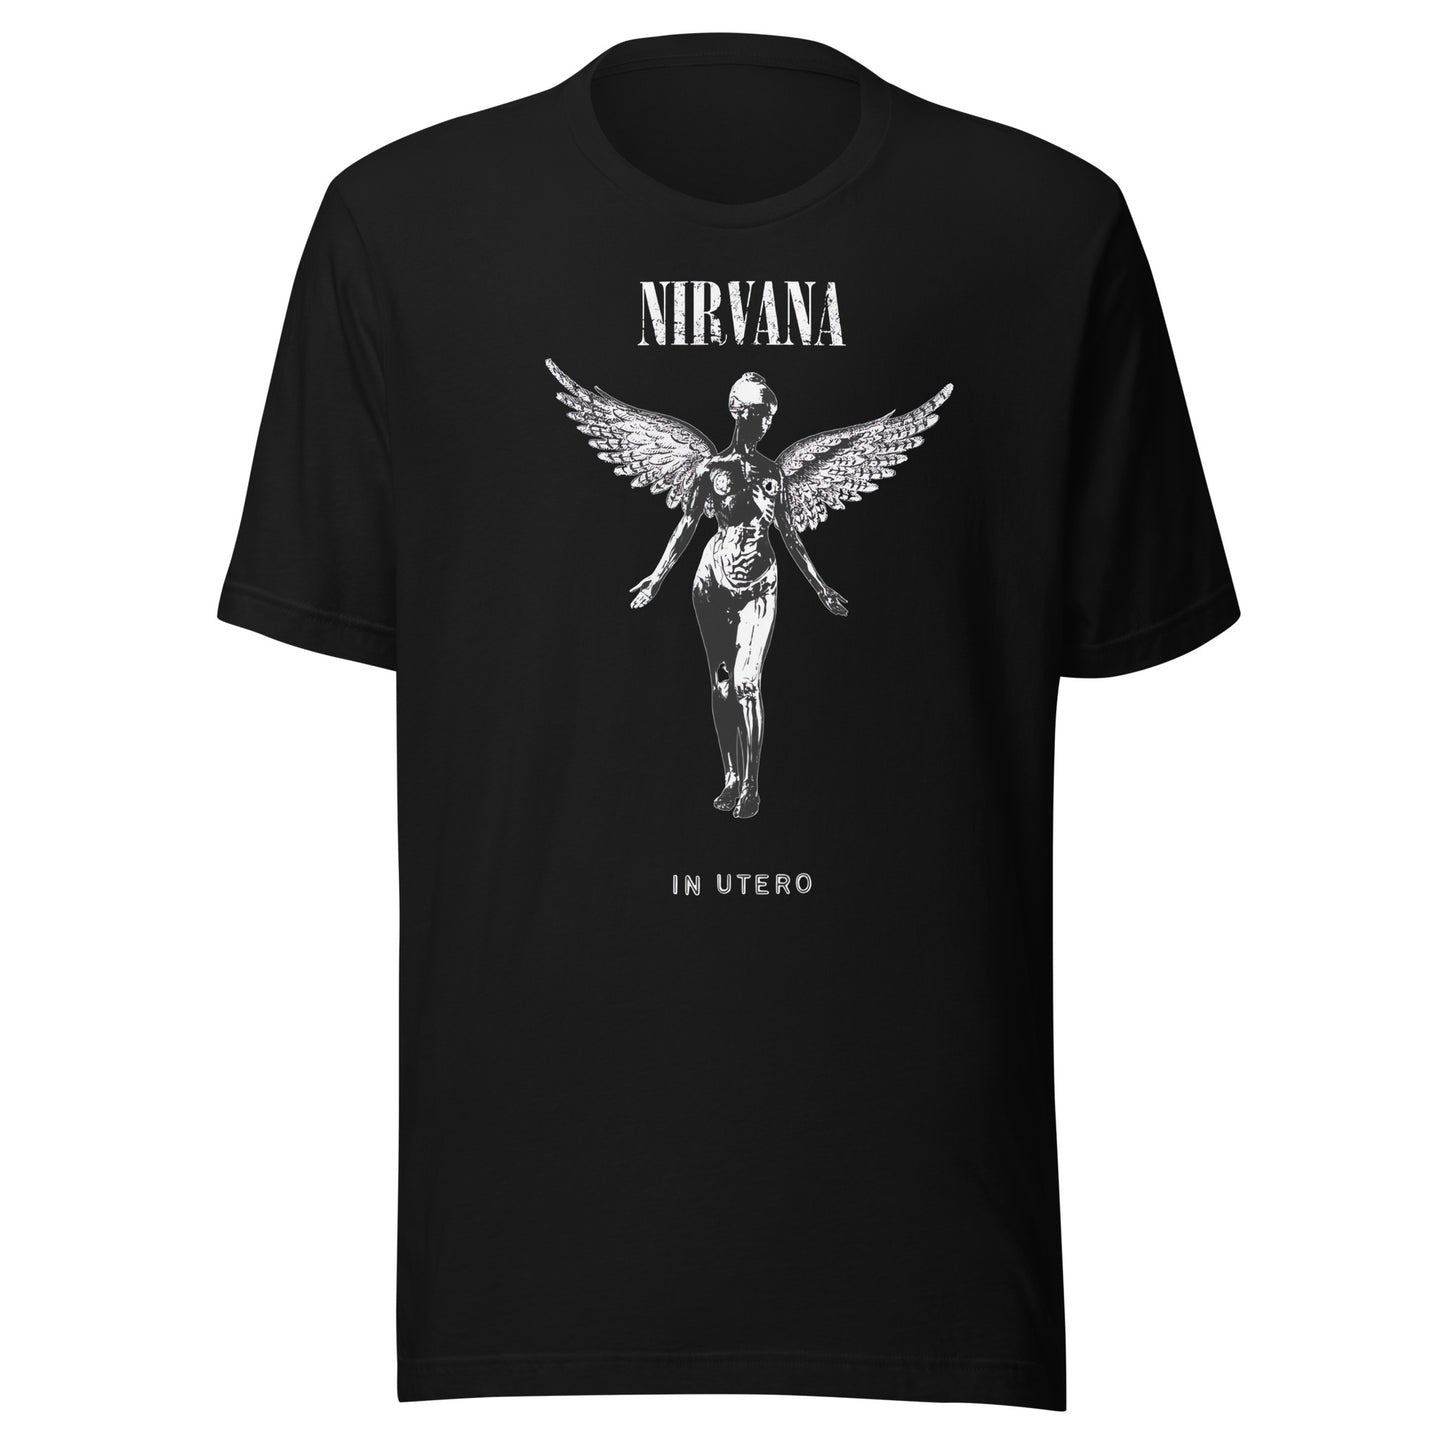 ¡Compra el mejor merchandising en Superstar! Encuentra diseños únicos y de alta calidad en playeras, Playera Nirvana in Utero B.W